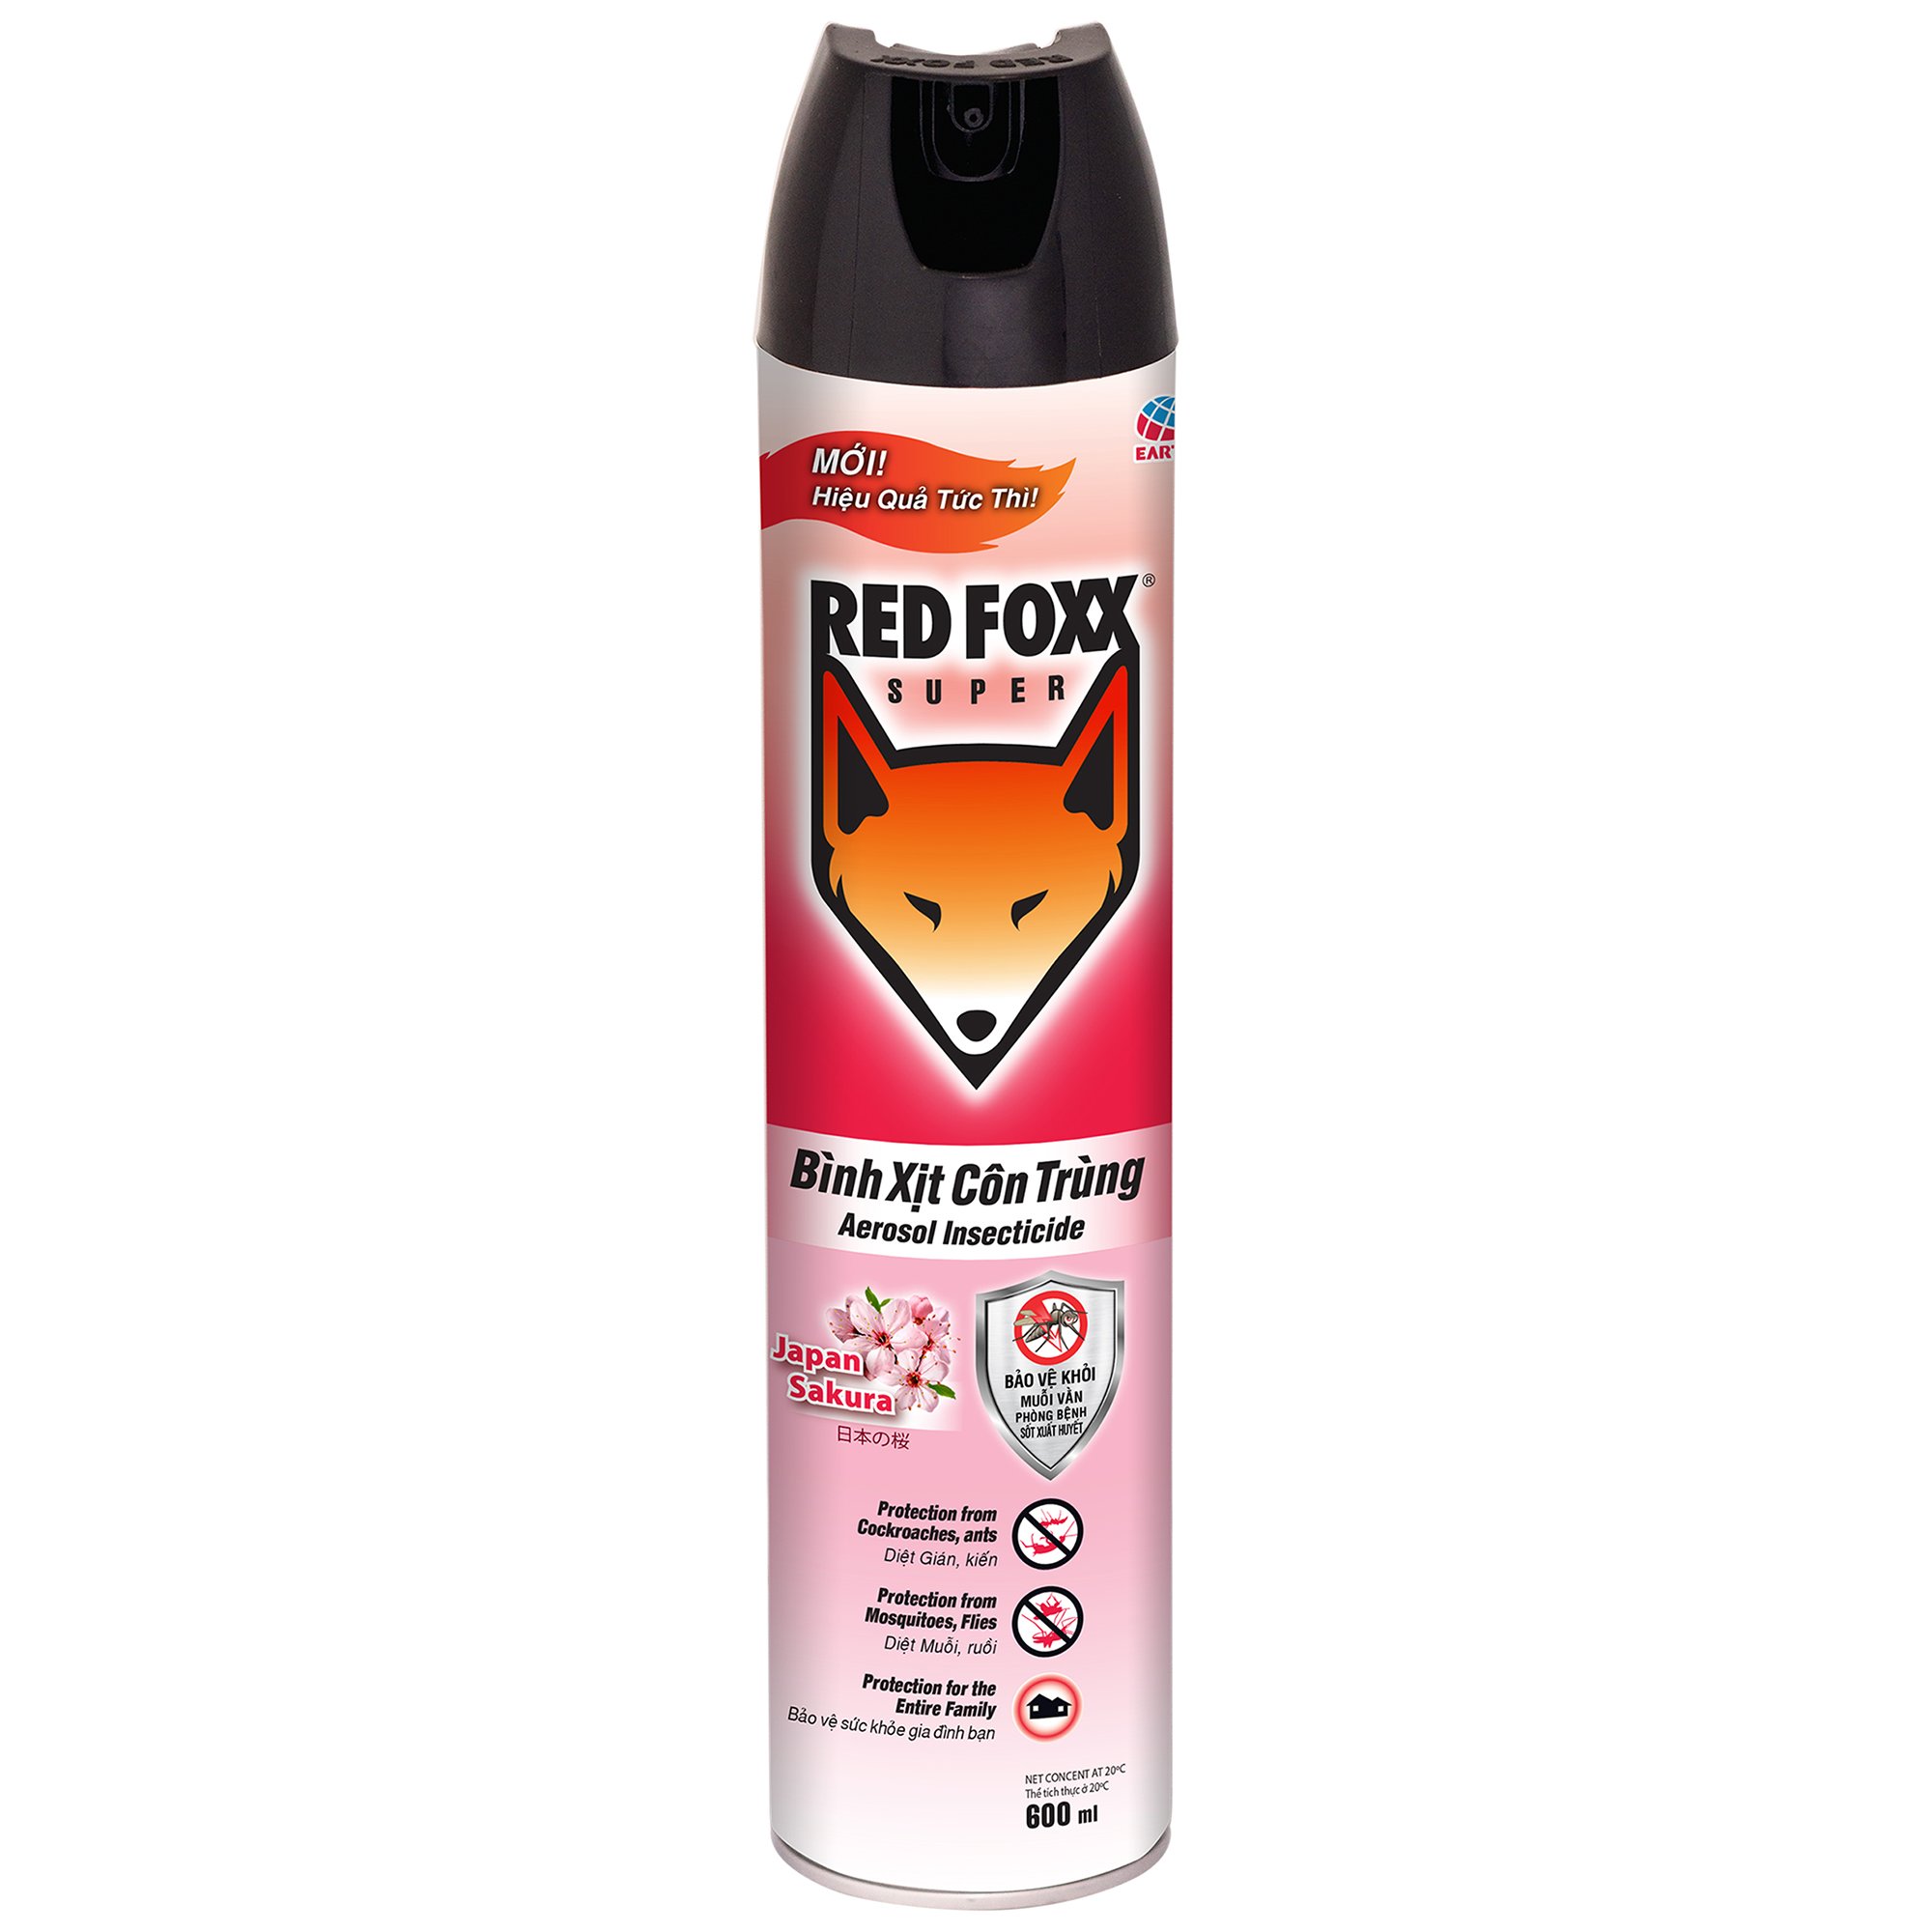 Bình xịt côn trùng RED FOXX 600ml - Hương Sakura